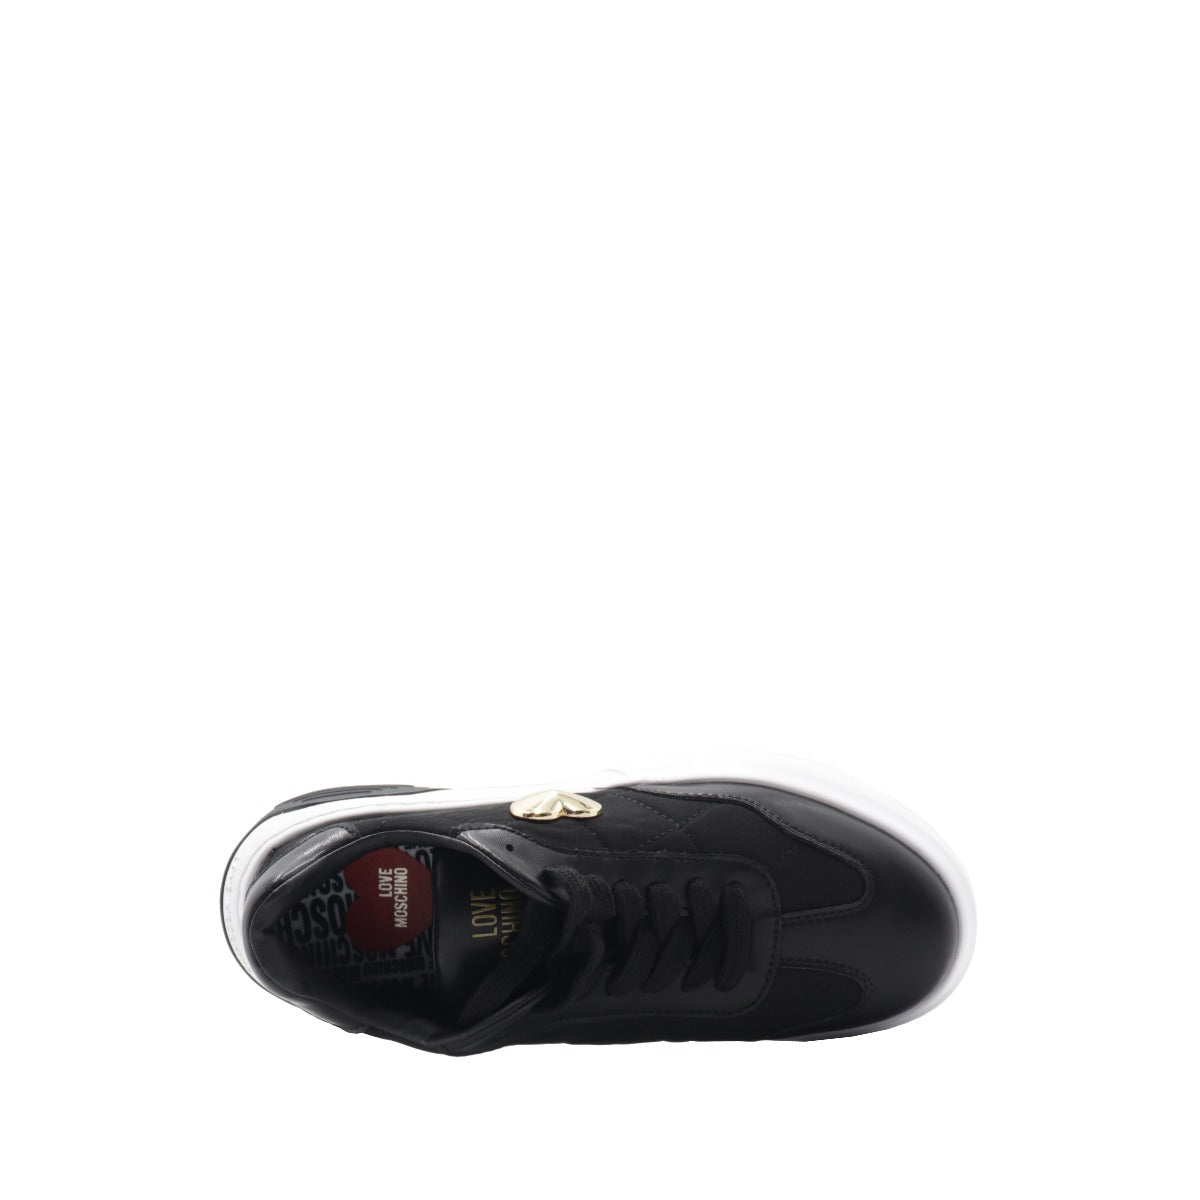 Love Moschino Women's Sneakers Black Calfskin and Nylon